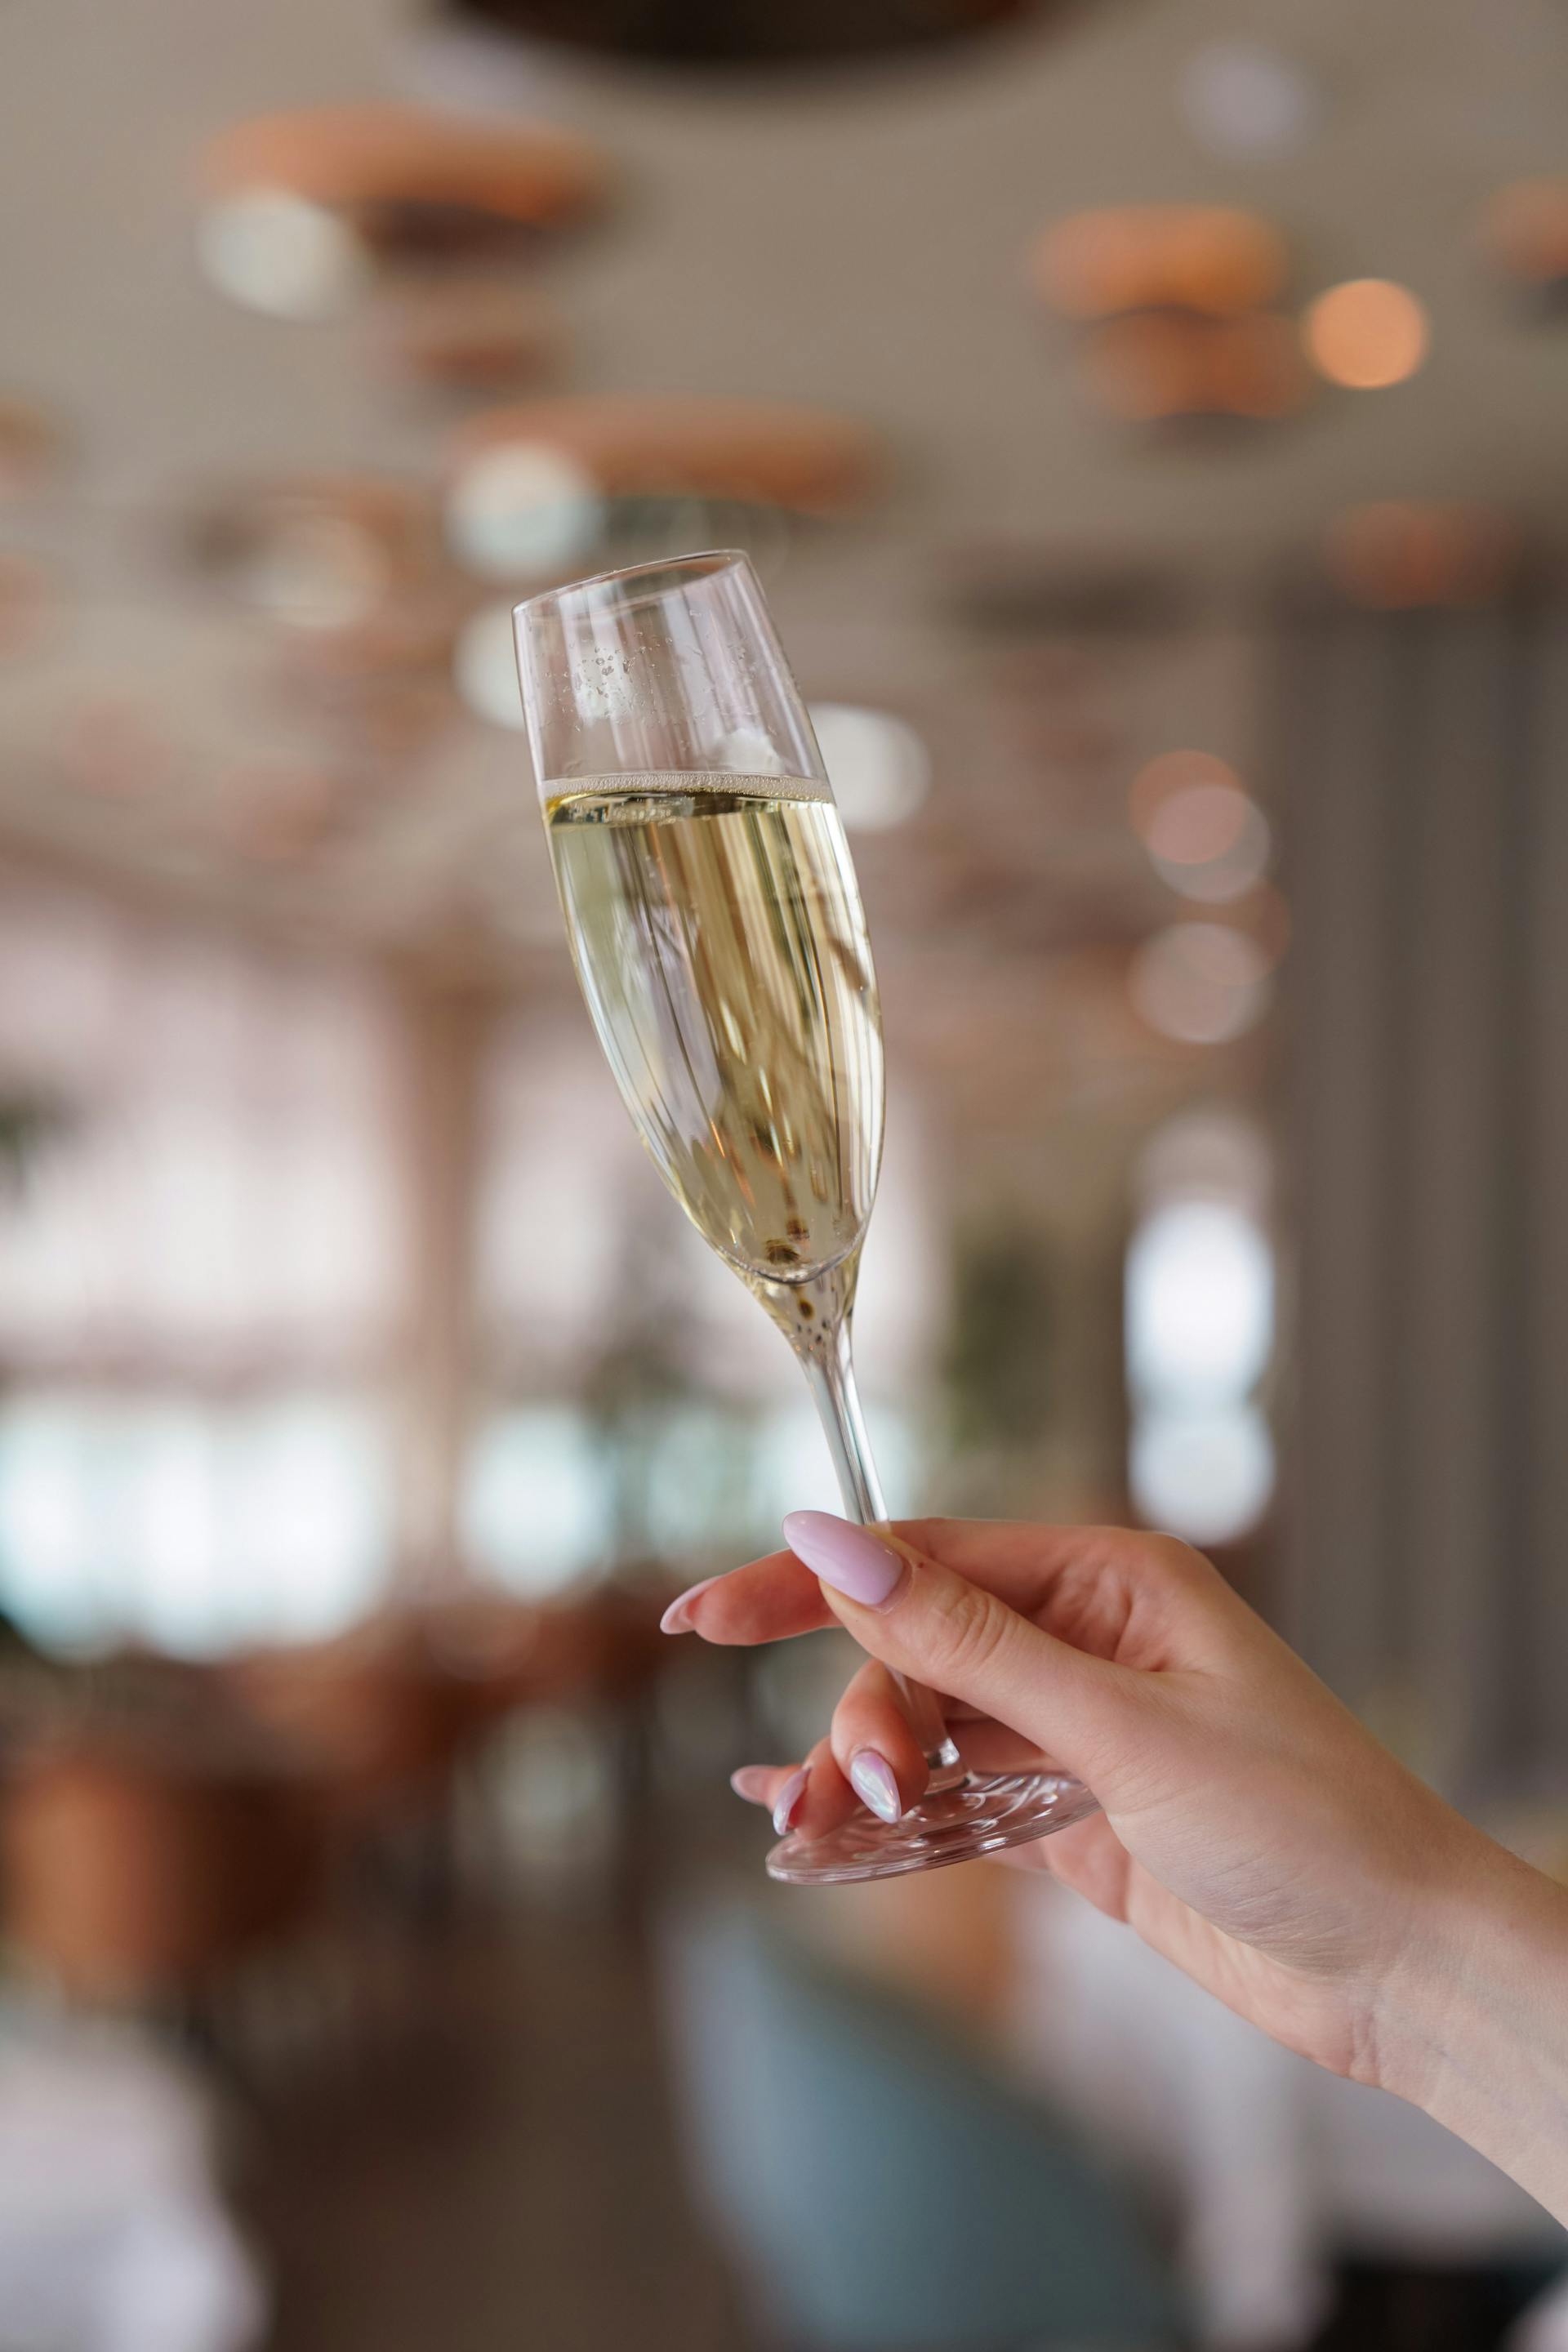 Une personne tenant une coupe de champagne | Source : Pexels